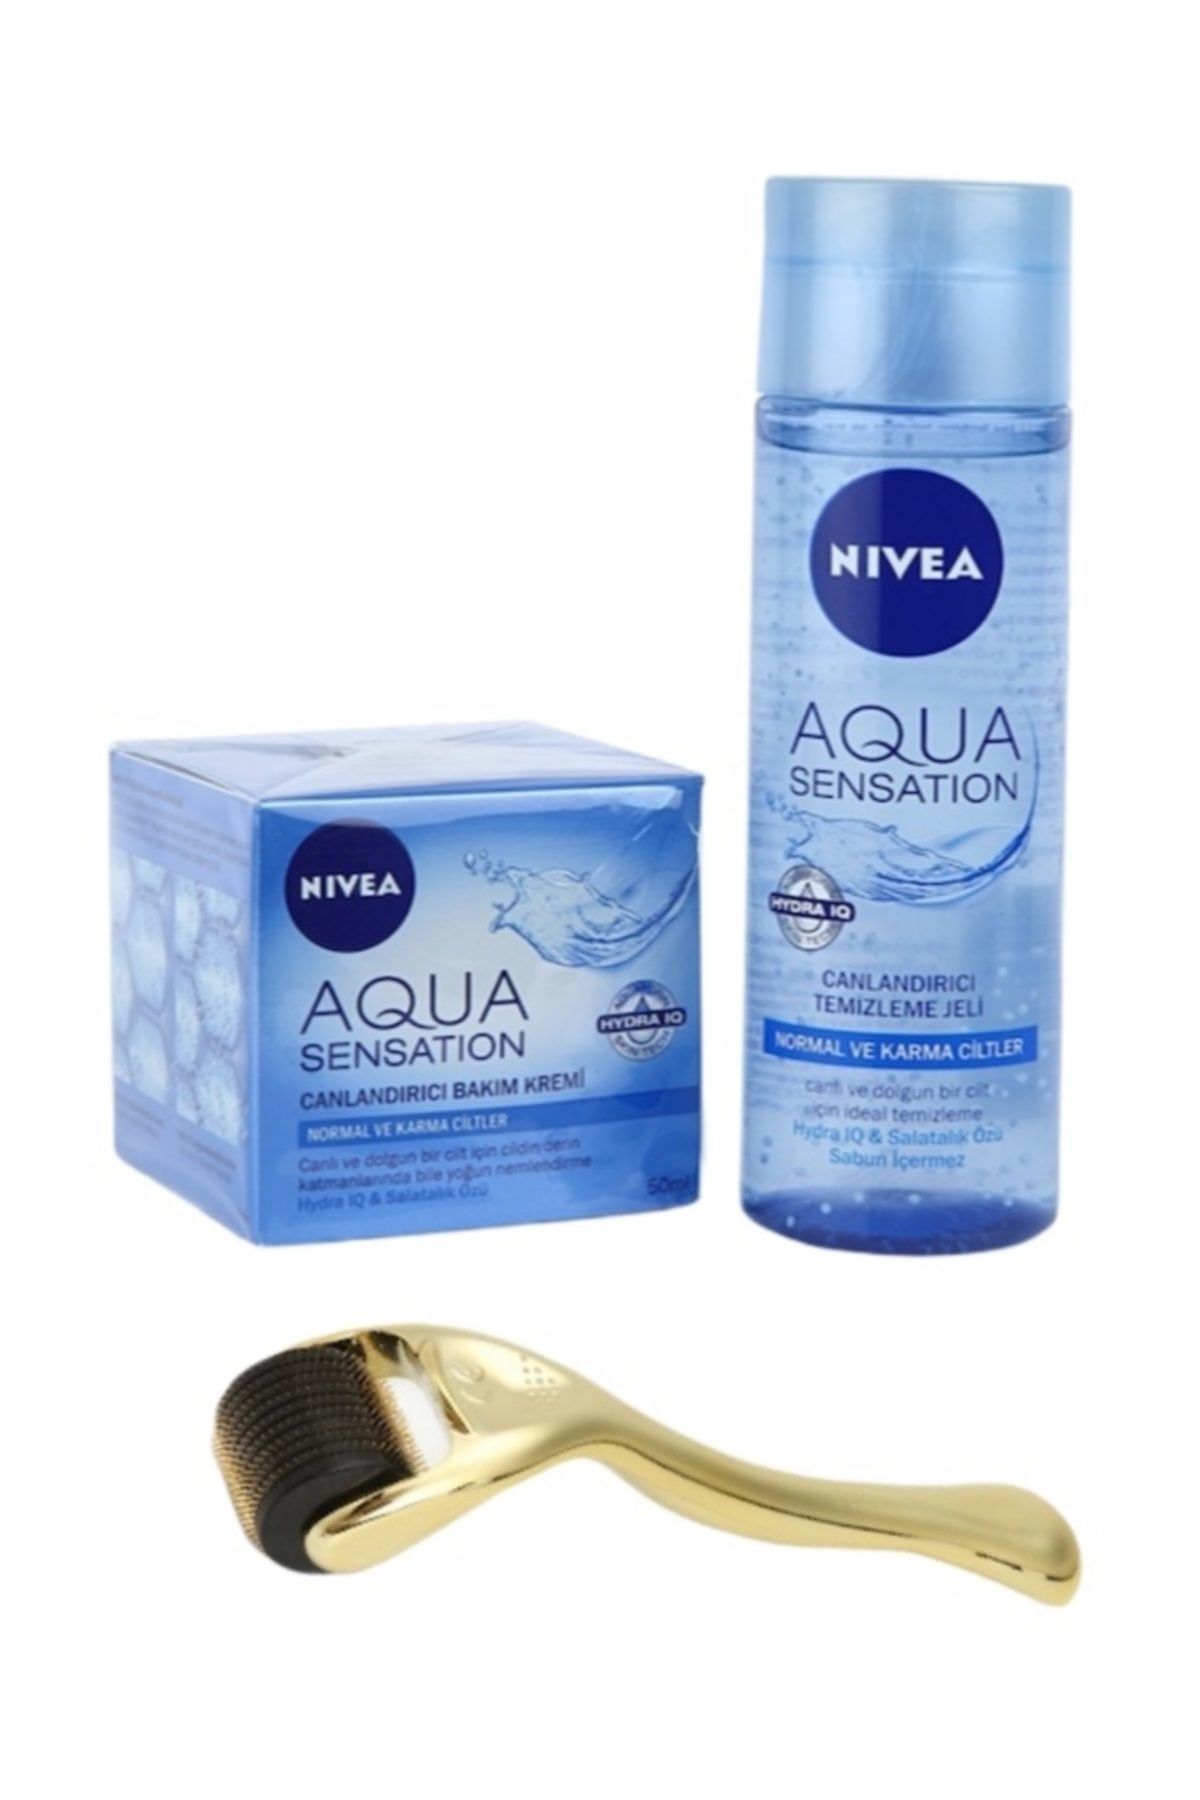 NIVEA Aqua Sensation Cilt Bakım Seti - Canlandırıcı Temizleme Jeli 200 Ml + Bakım Kremi 50ml.